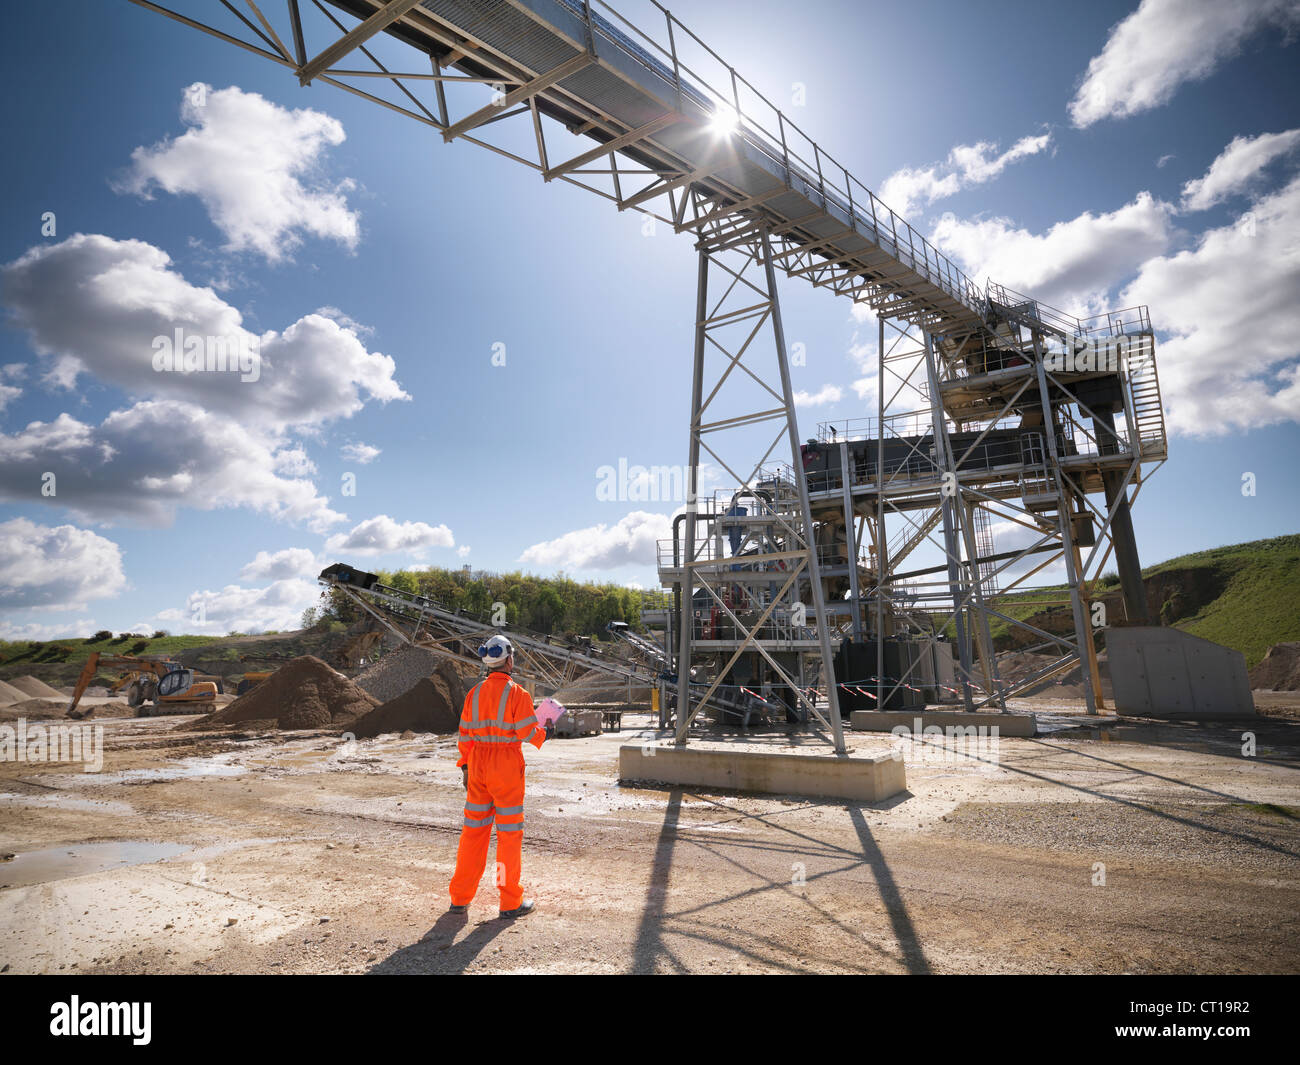 Worker standing under conveyor in quarry Stock Photo